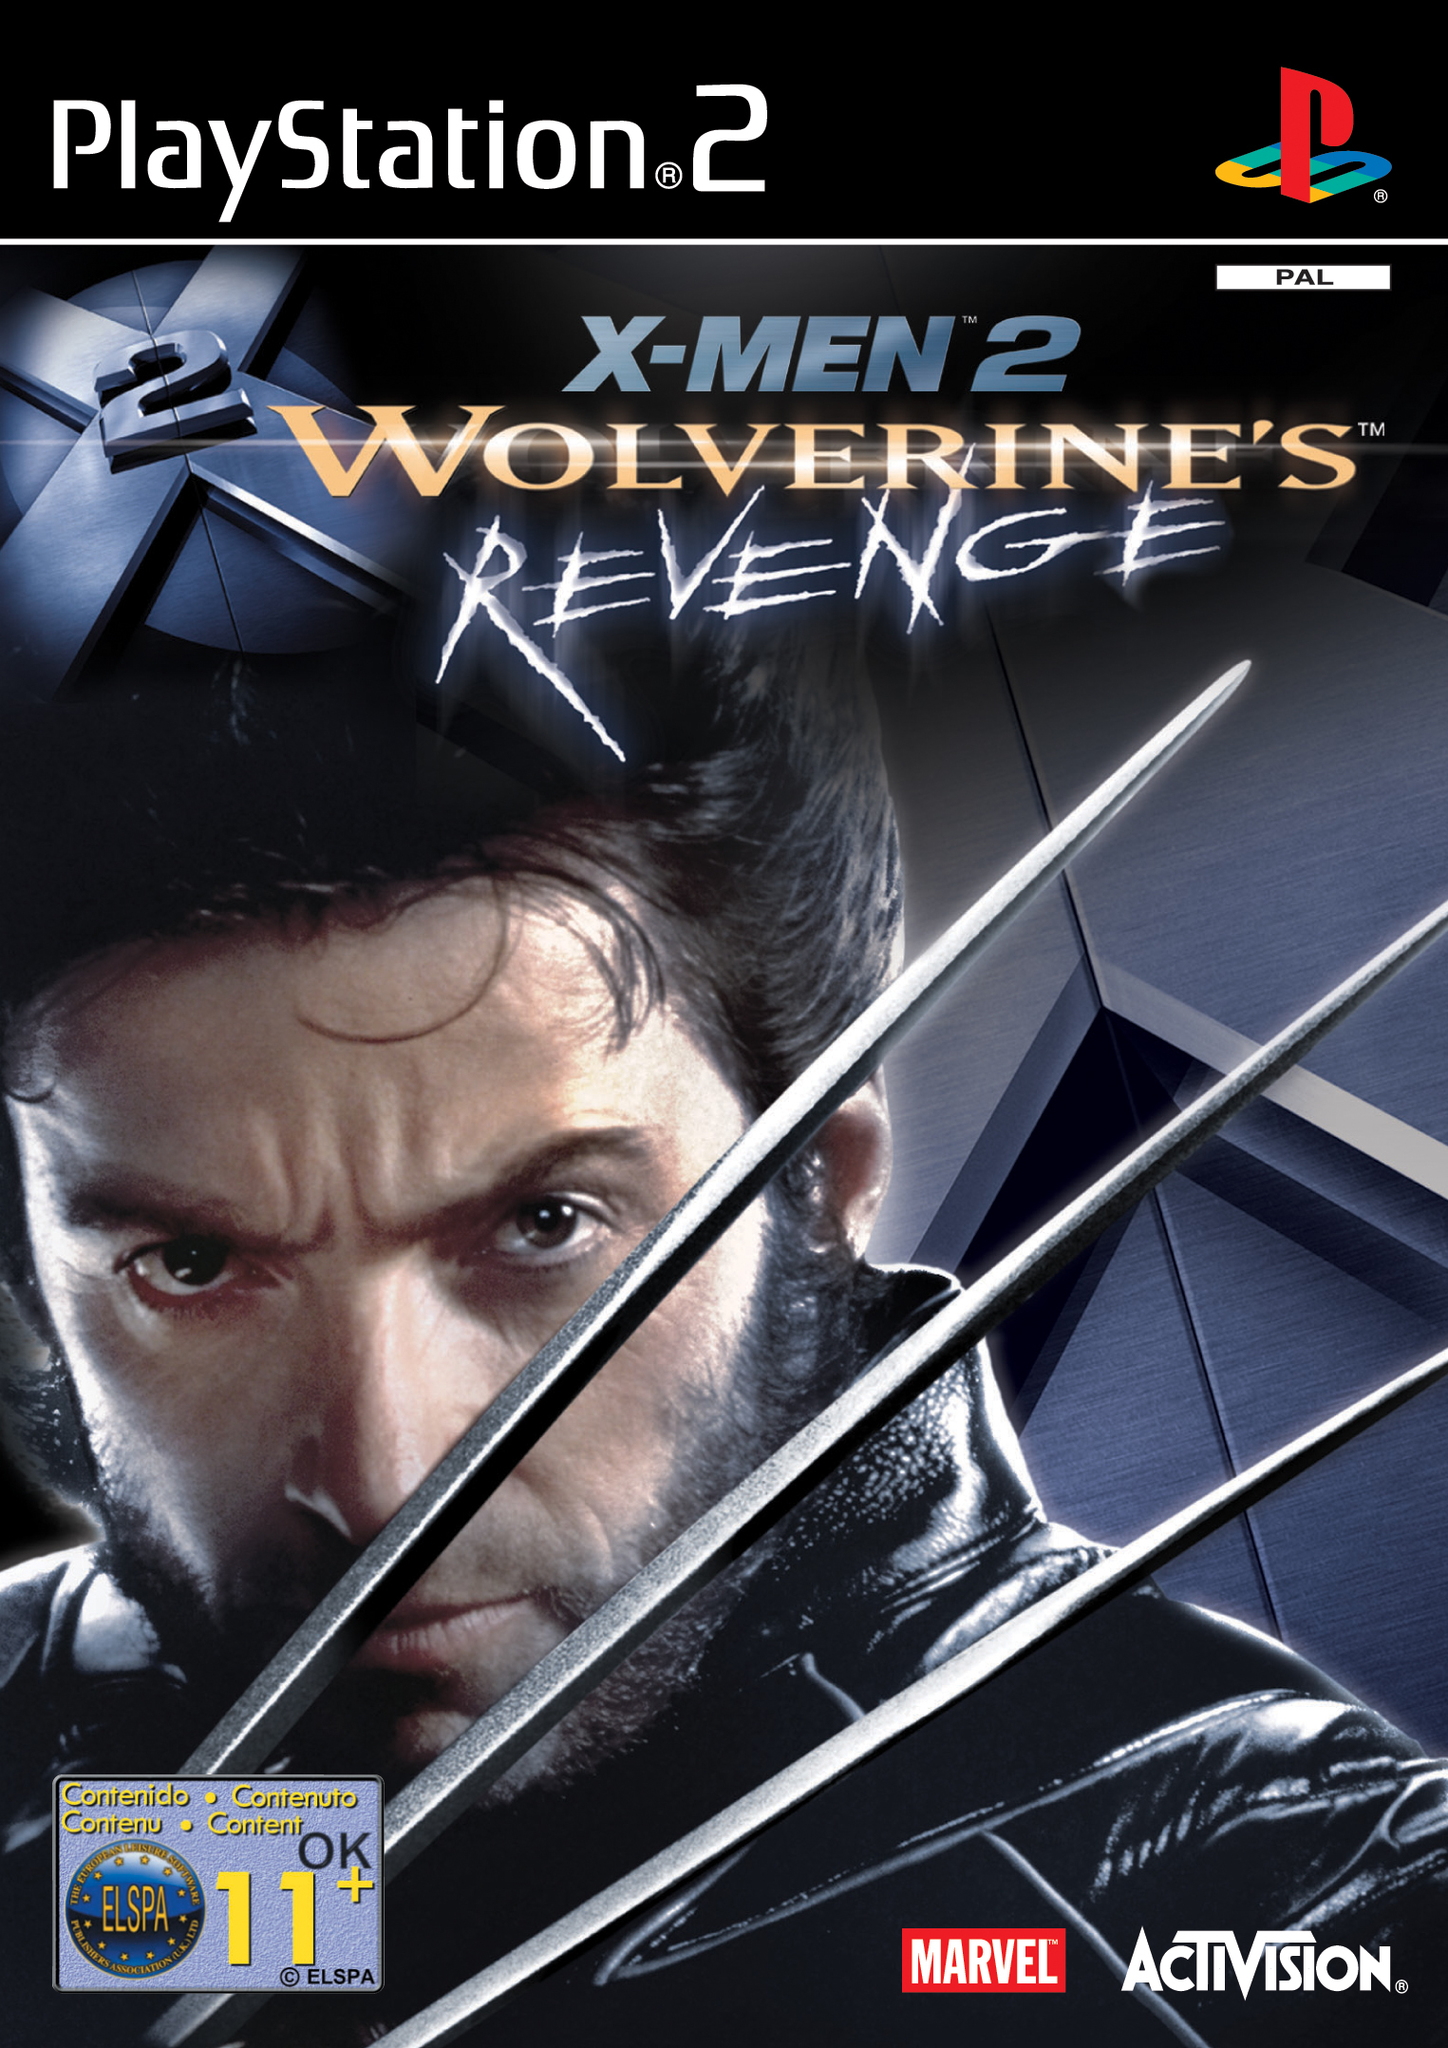 X Men 2 Wolverines Revenge